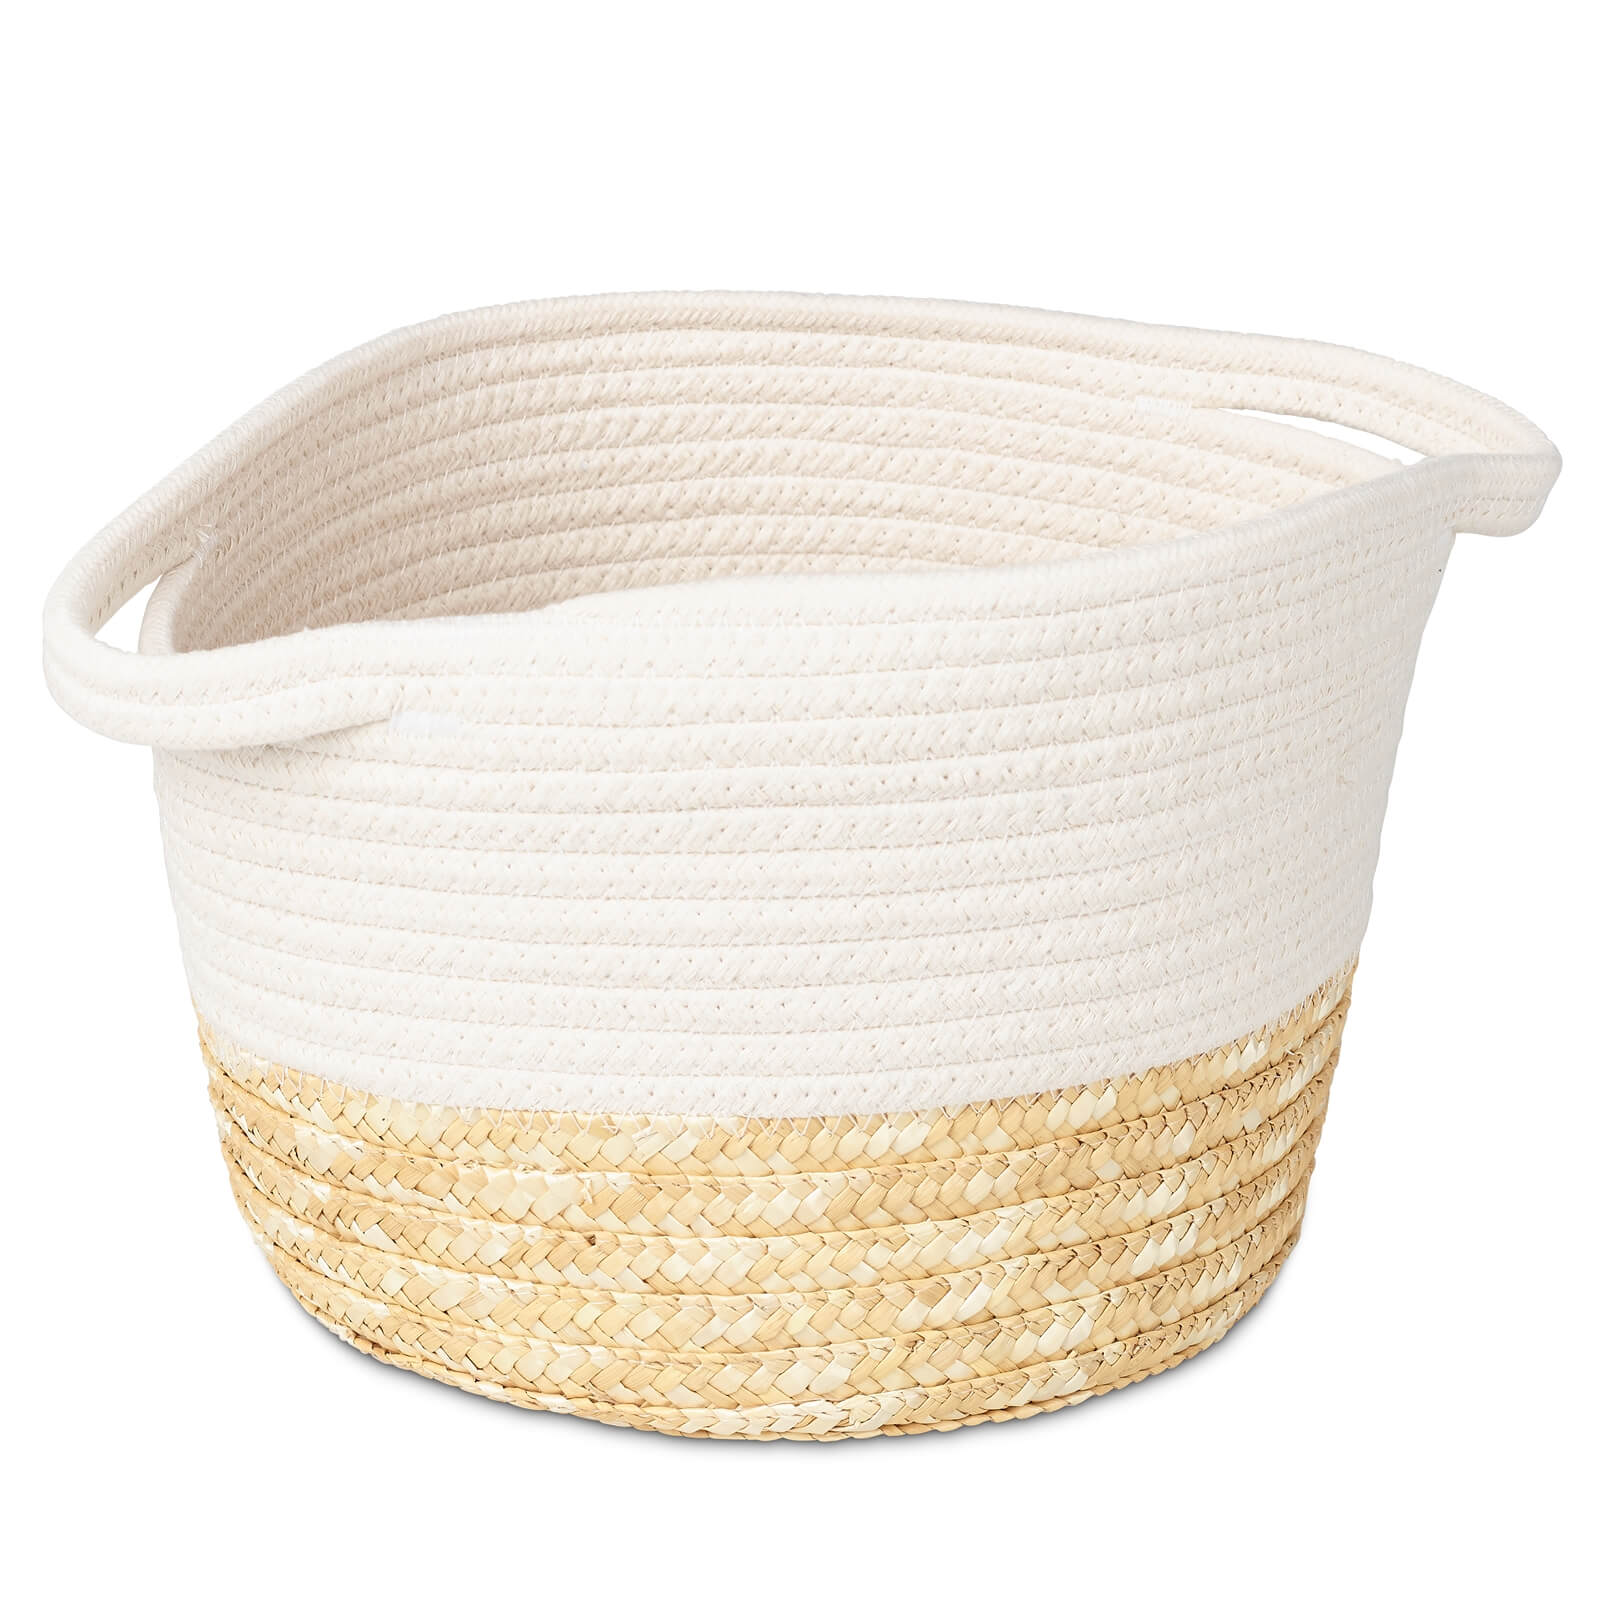 Medium Rope Storage Basket - White Top